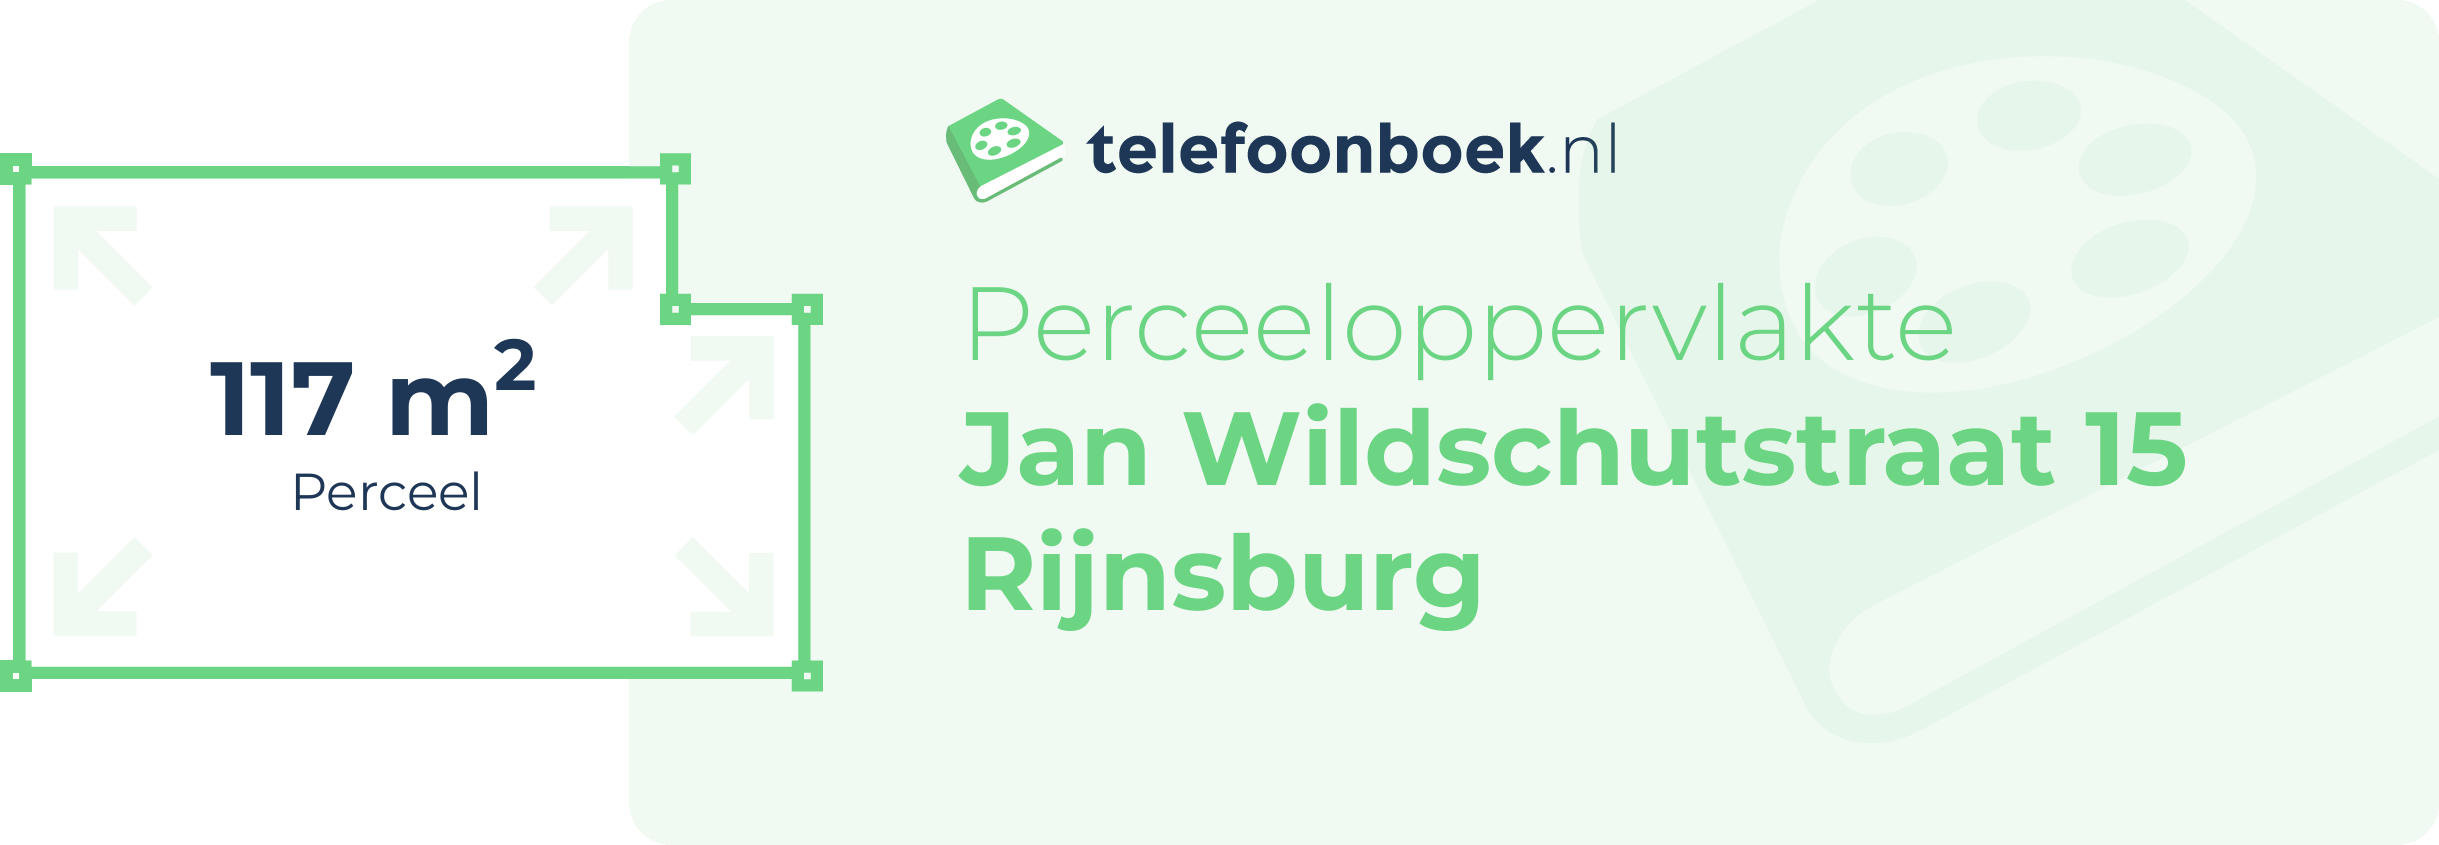 Perceeloppervlakte Jan Wildschutstraat 15 Rijnsburg